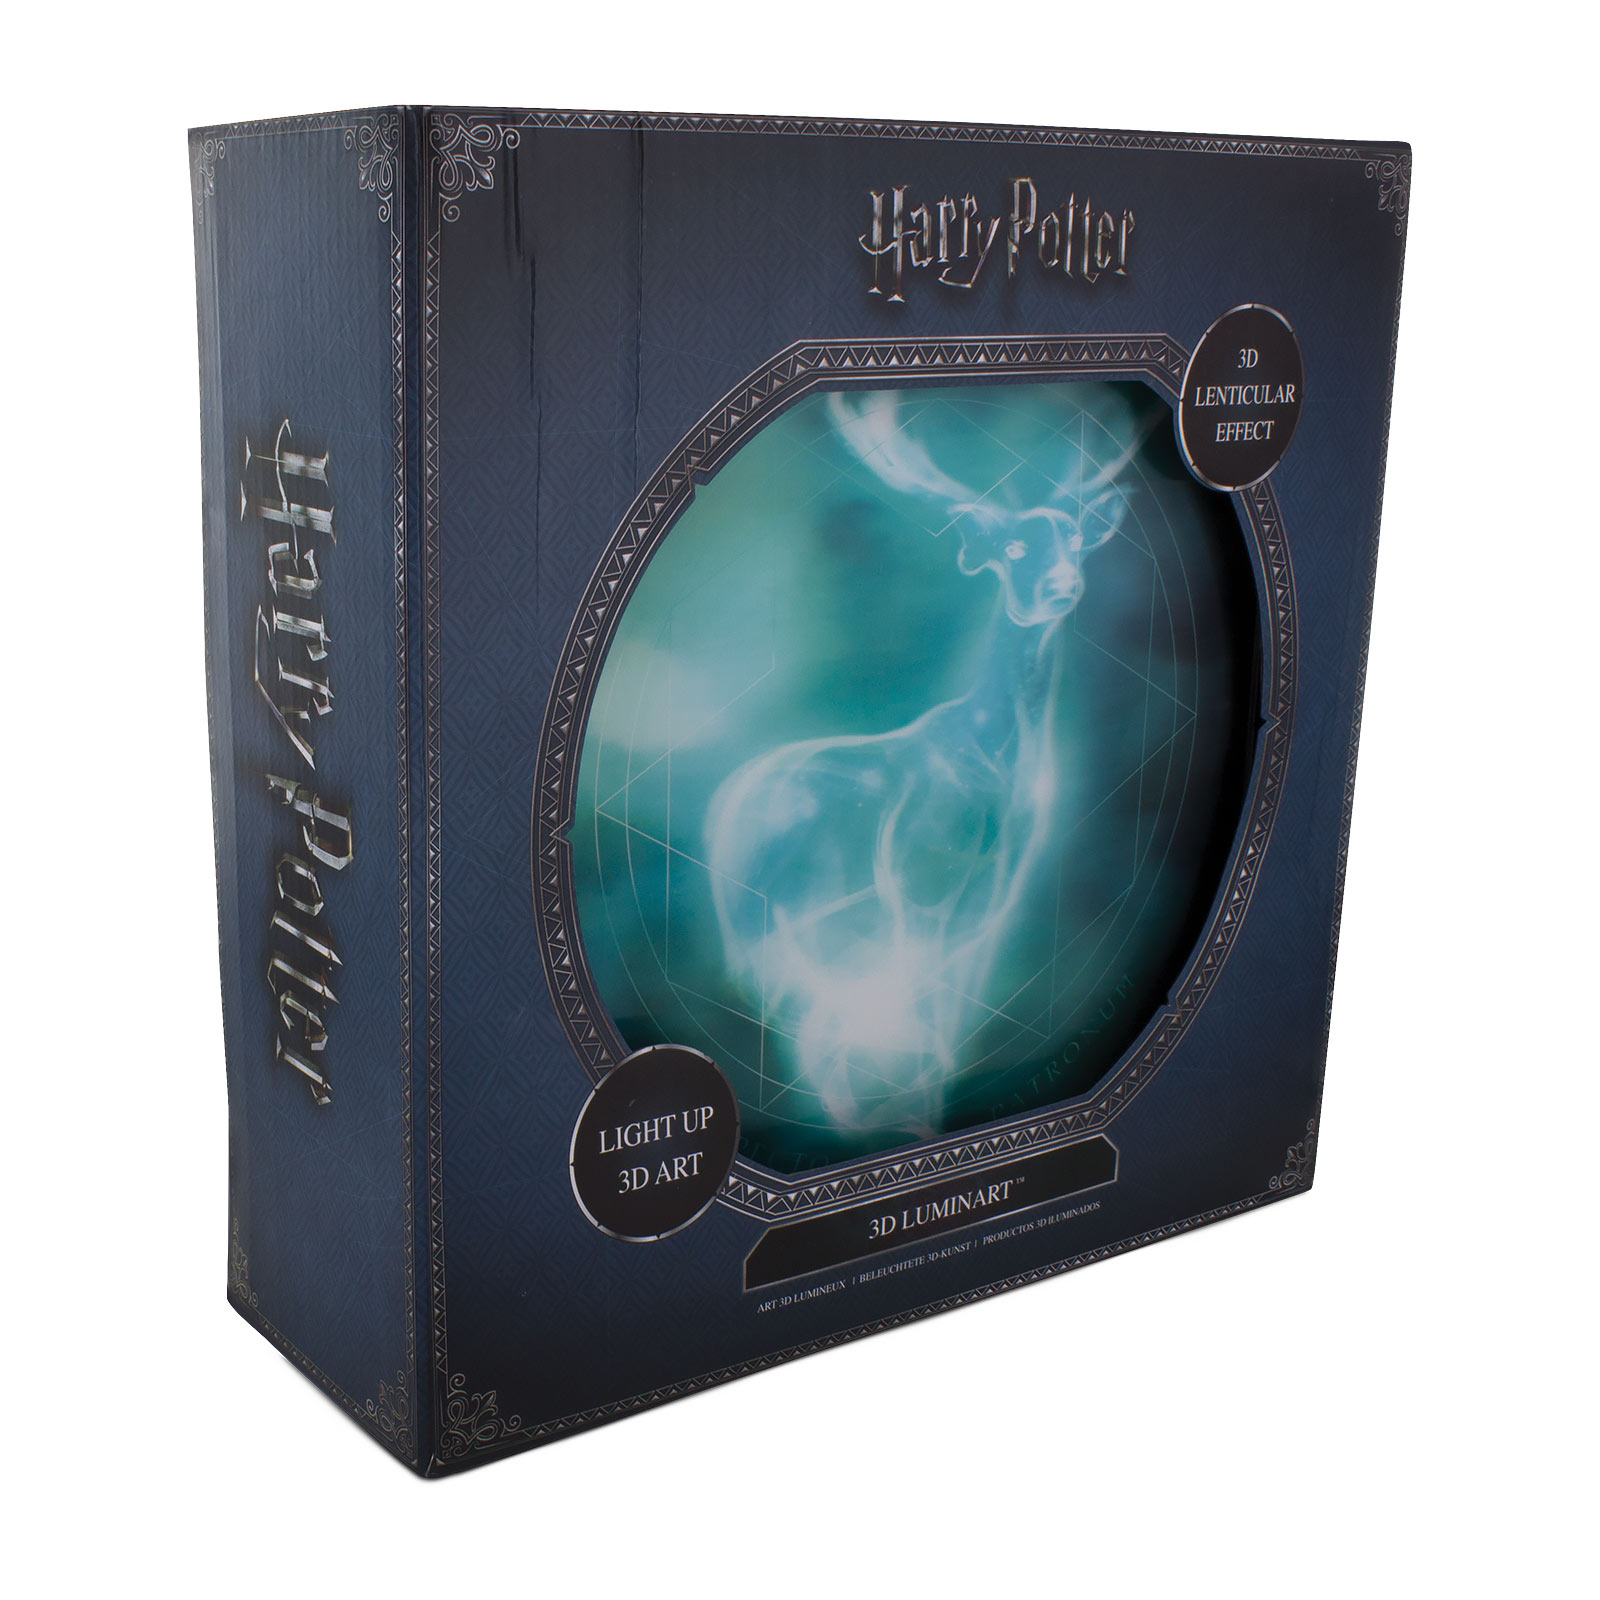 Harry Potter - Image murale 3D Patronus avec lumière